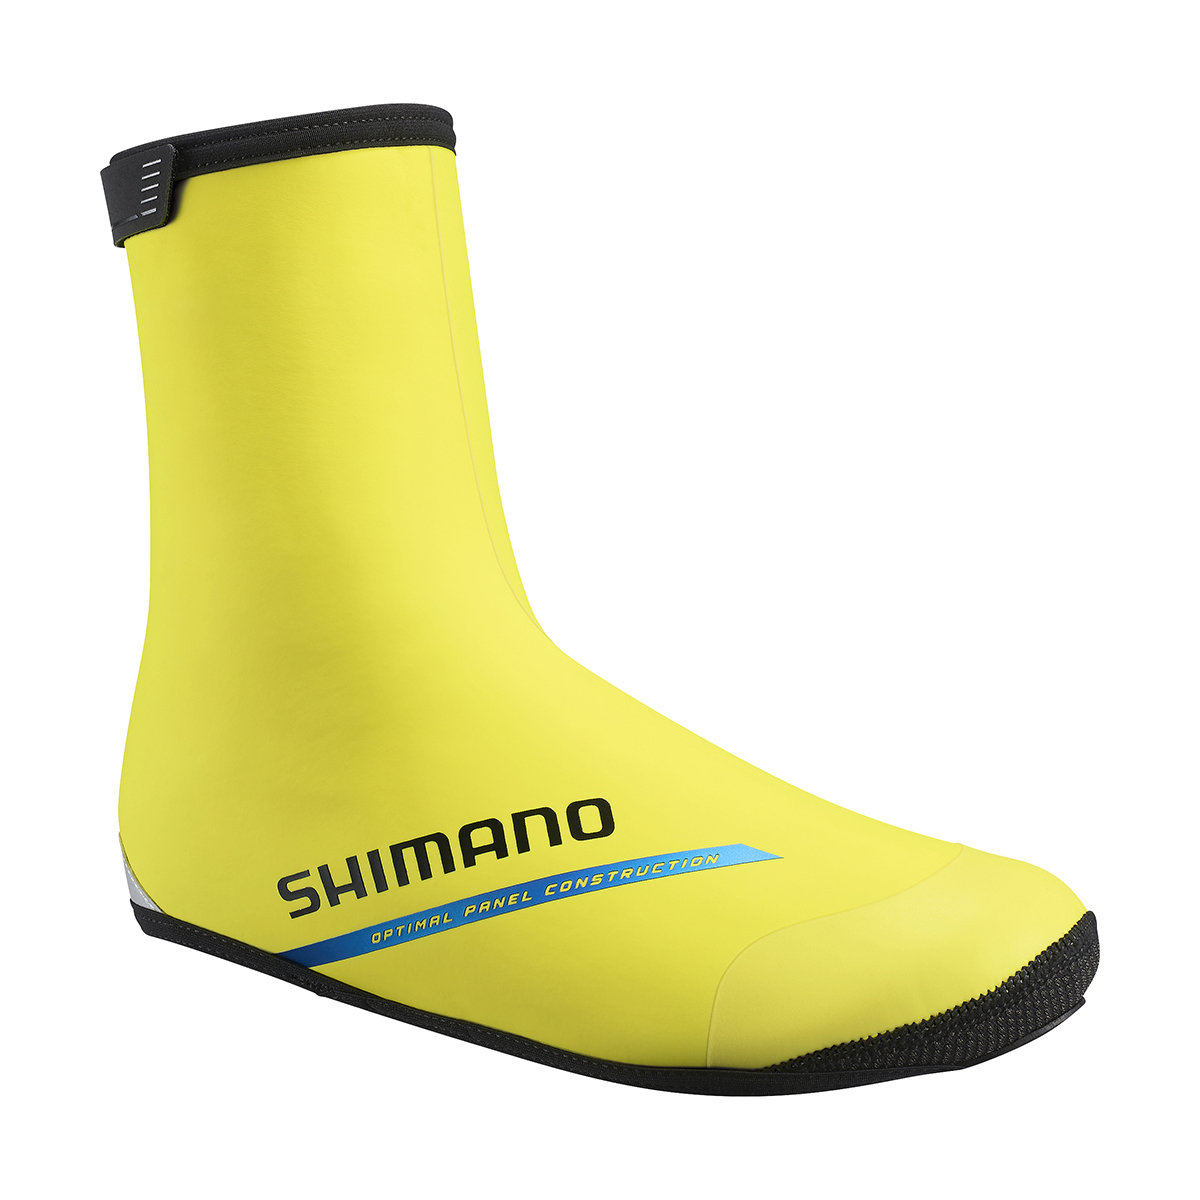 Shimano XC Thermal Shoe Covers, żółty S | EU 37-40 2021 Ochraniacze na buty i getry ECWFABWUS22UY0704